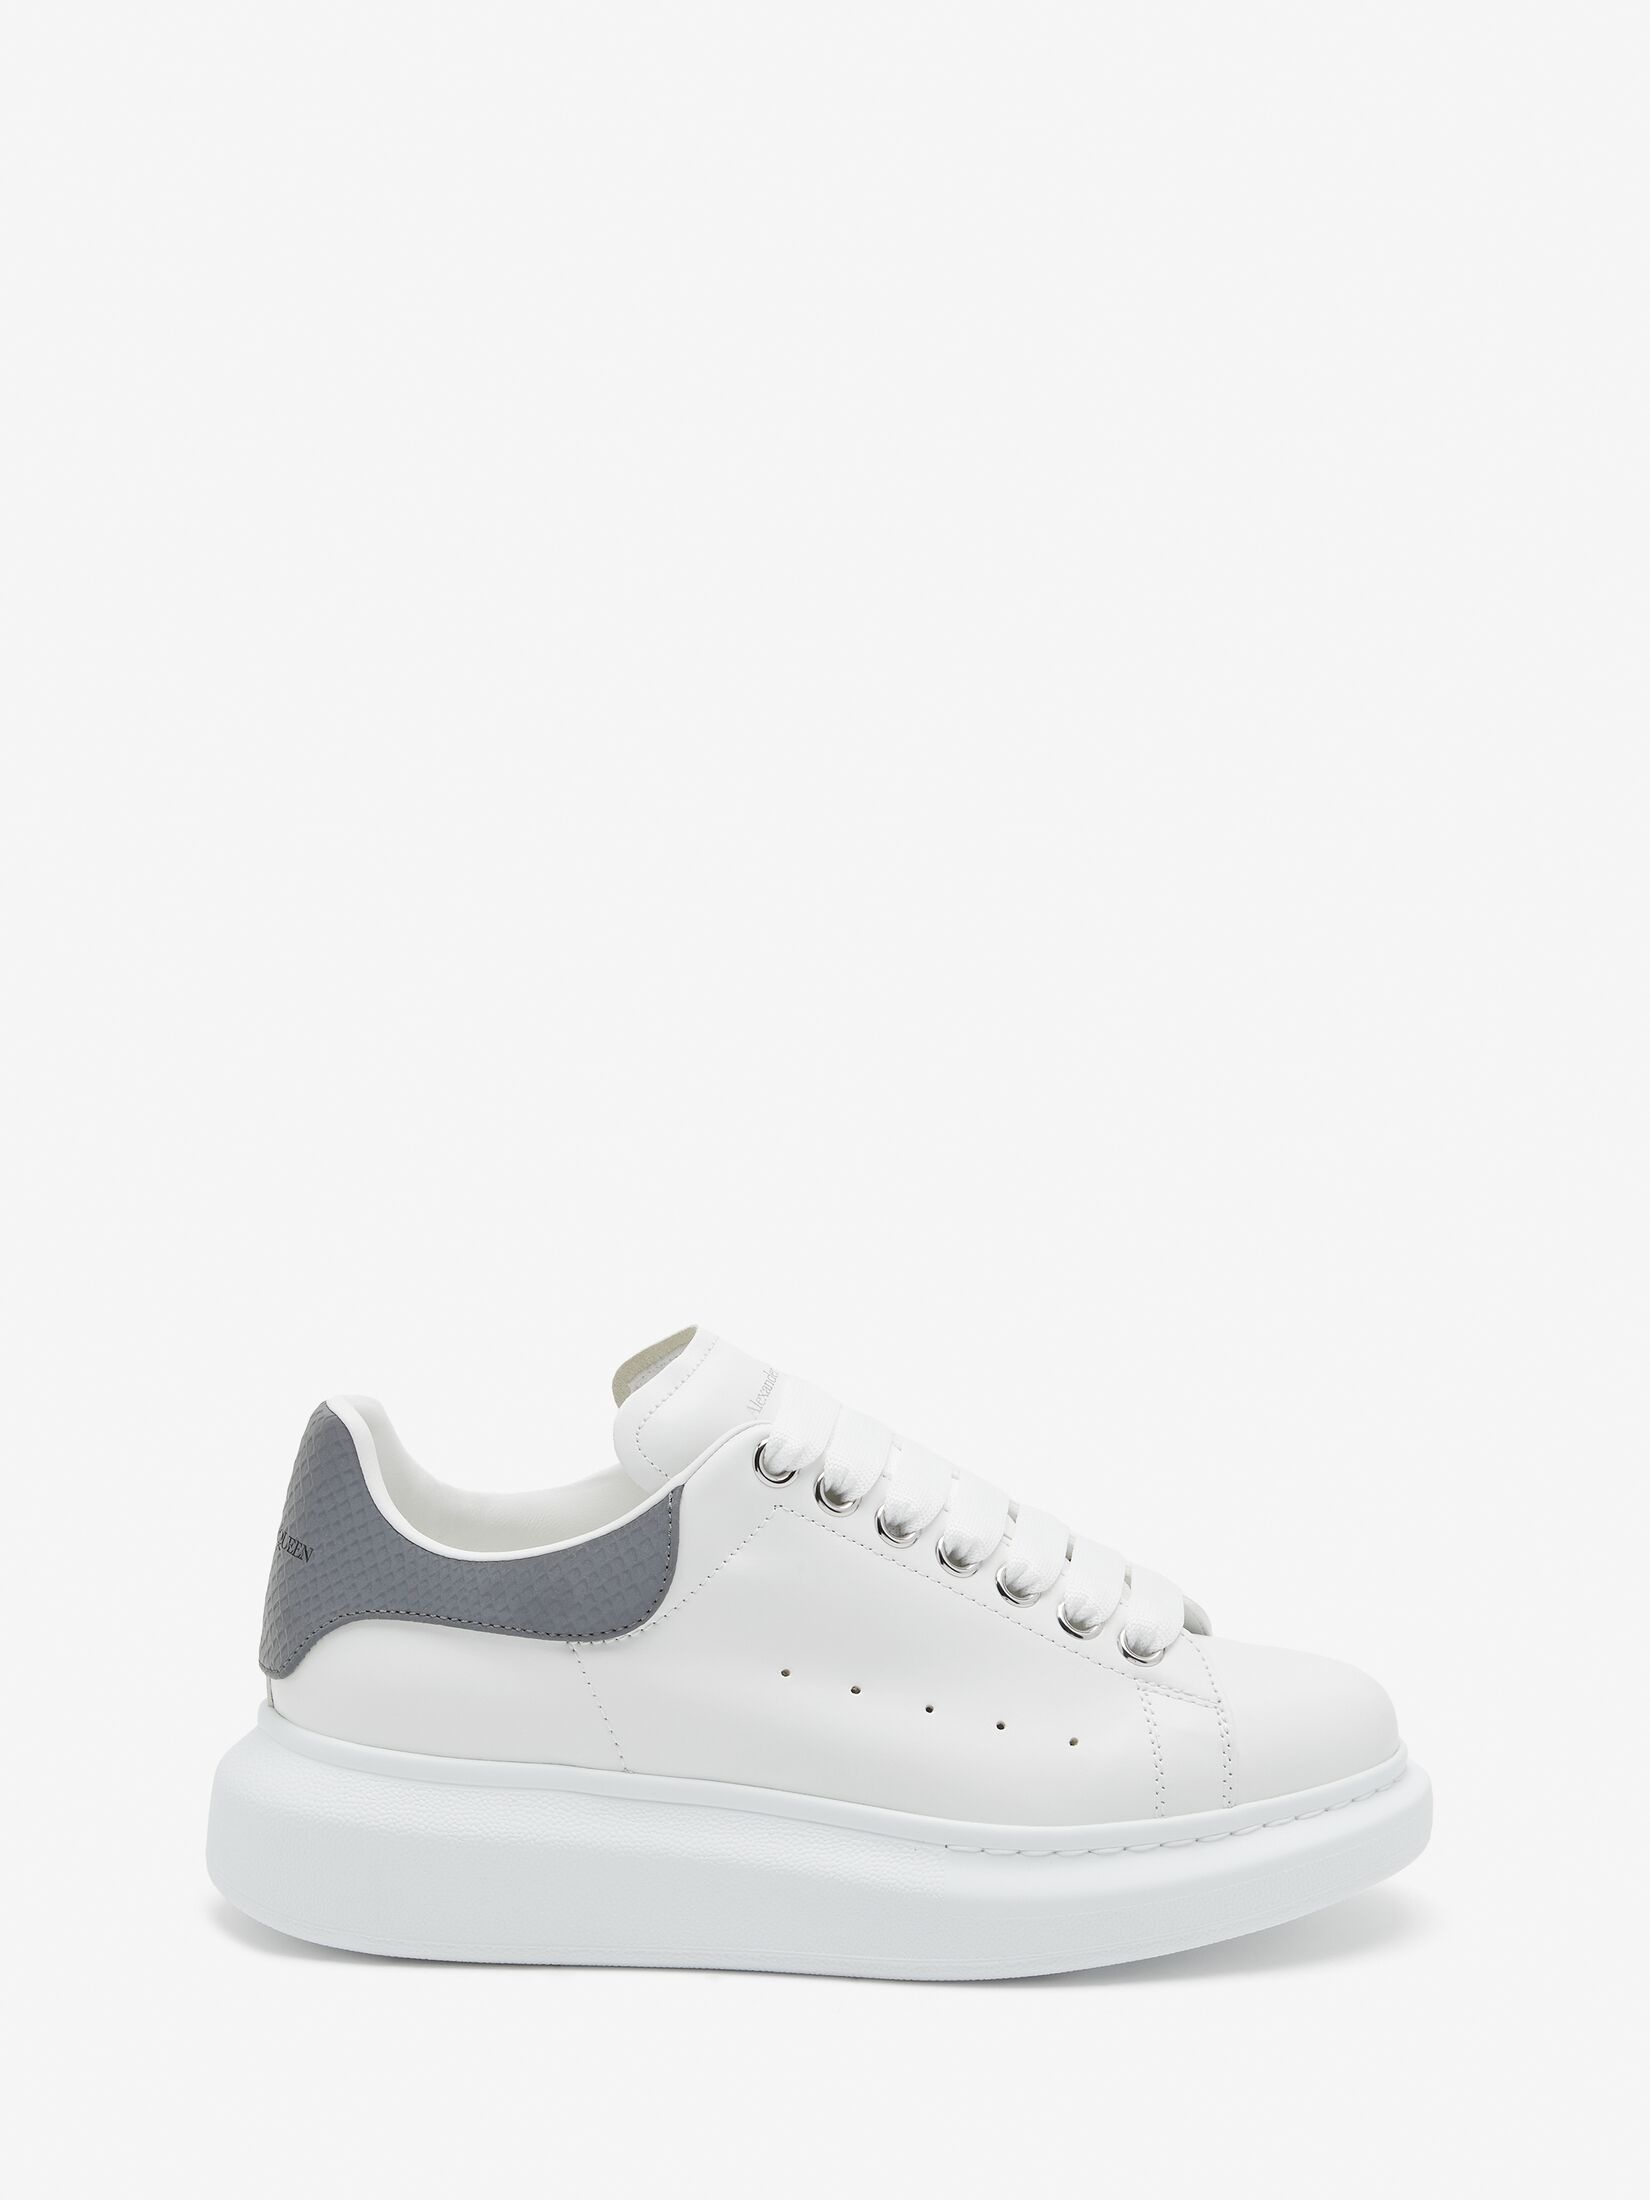 Women's Oversized Sneaker in White/grey - 1